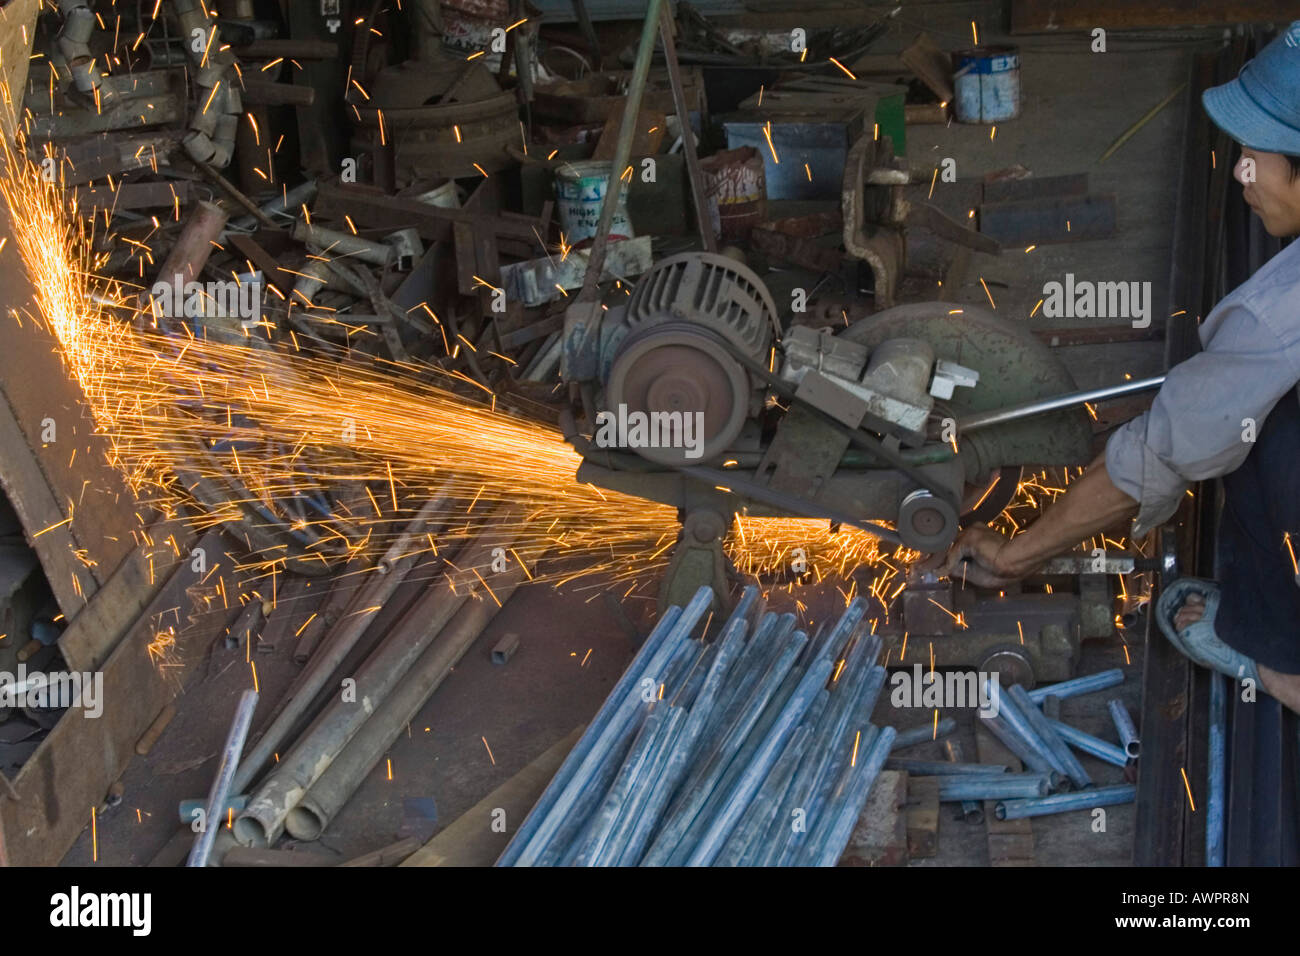 Metalworking industry in Vietnam, Asia Stock Photo